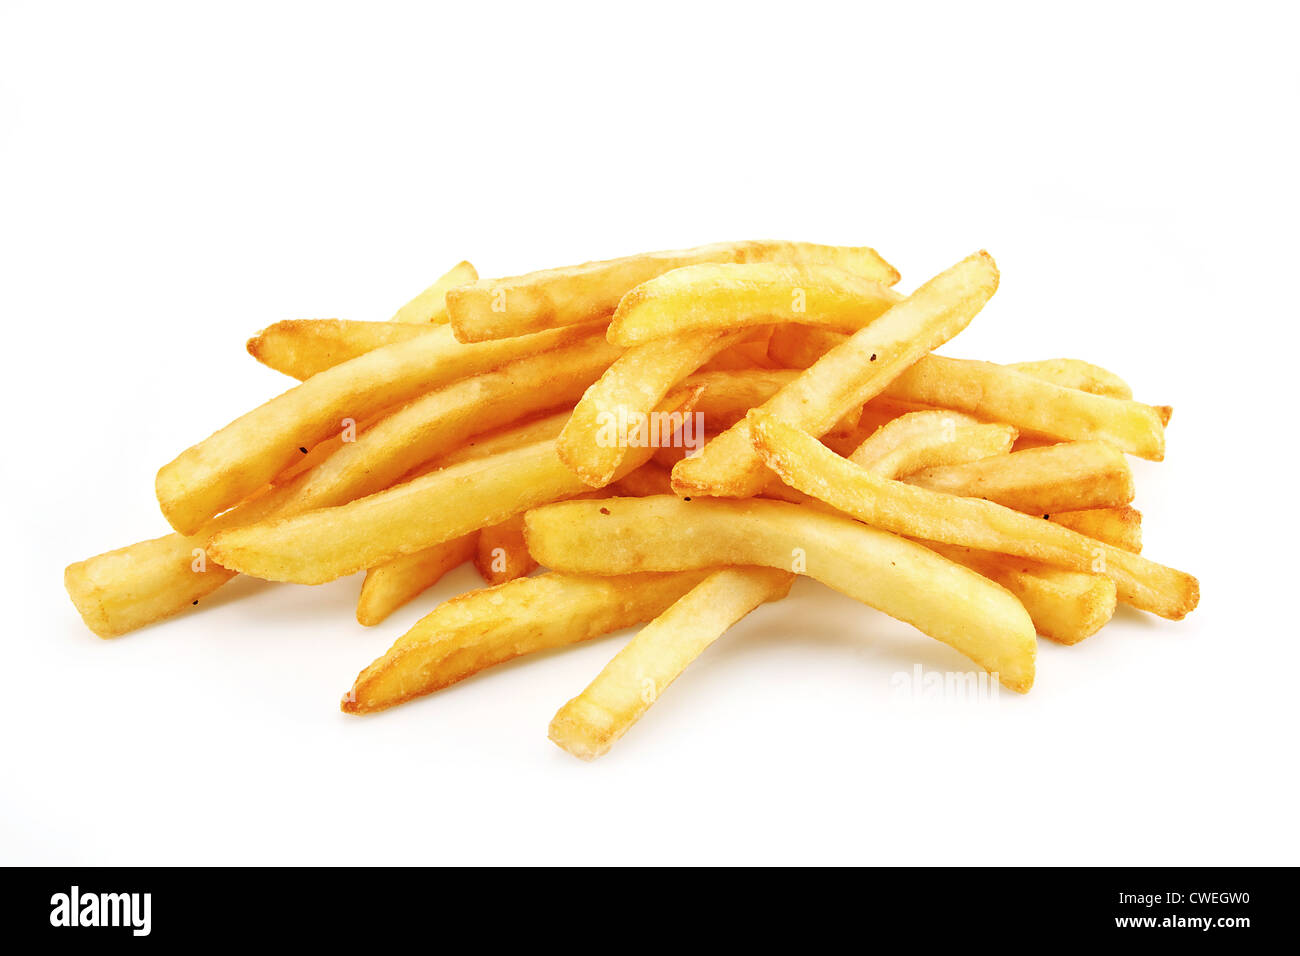 Pommes frites oder Chips ursprünglich genannt Pommes Frites und jüngerer Freiheit frites in Amerika Stockfoto